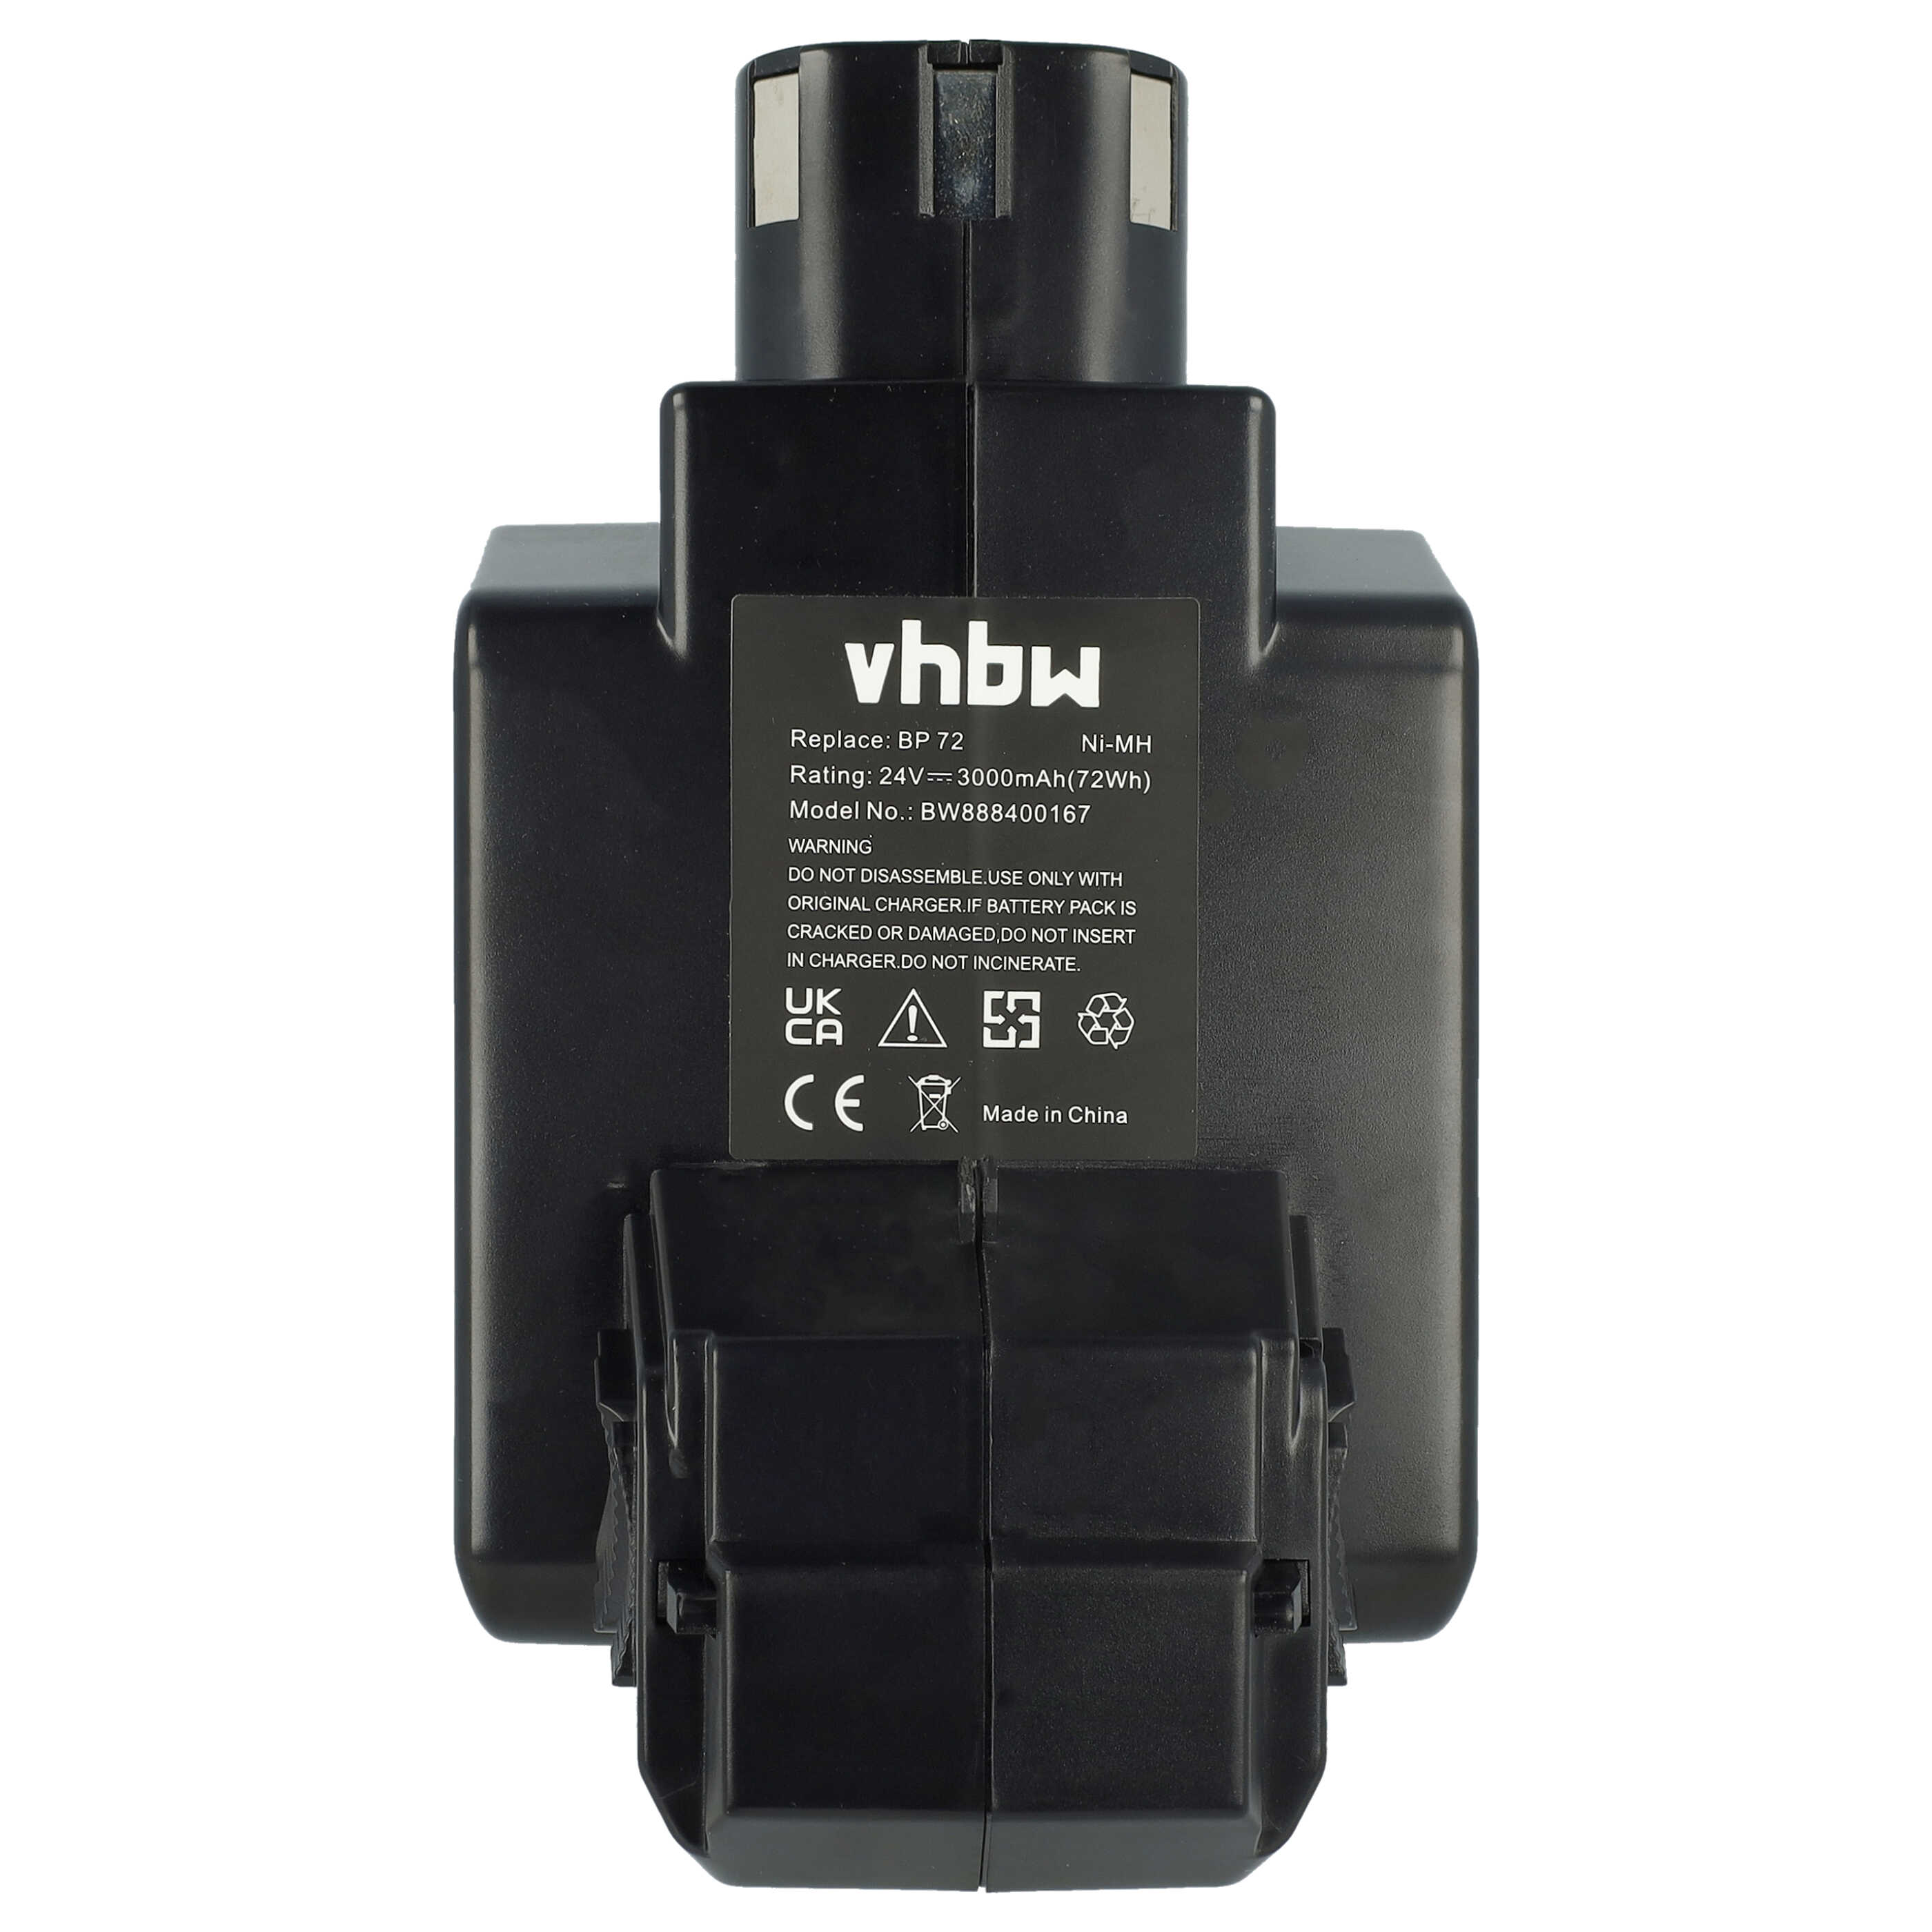 Batterie remplace Hilti BP72, BP60, 331530, BP40 pour outil électrique - 3000 mAh, 24 V, NiMH